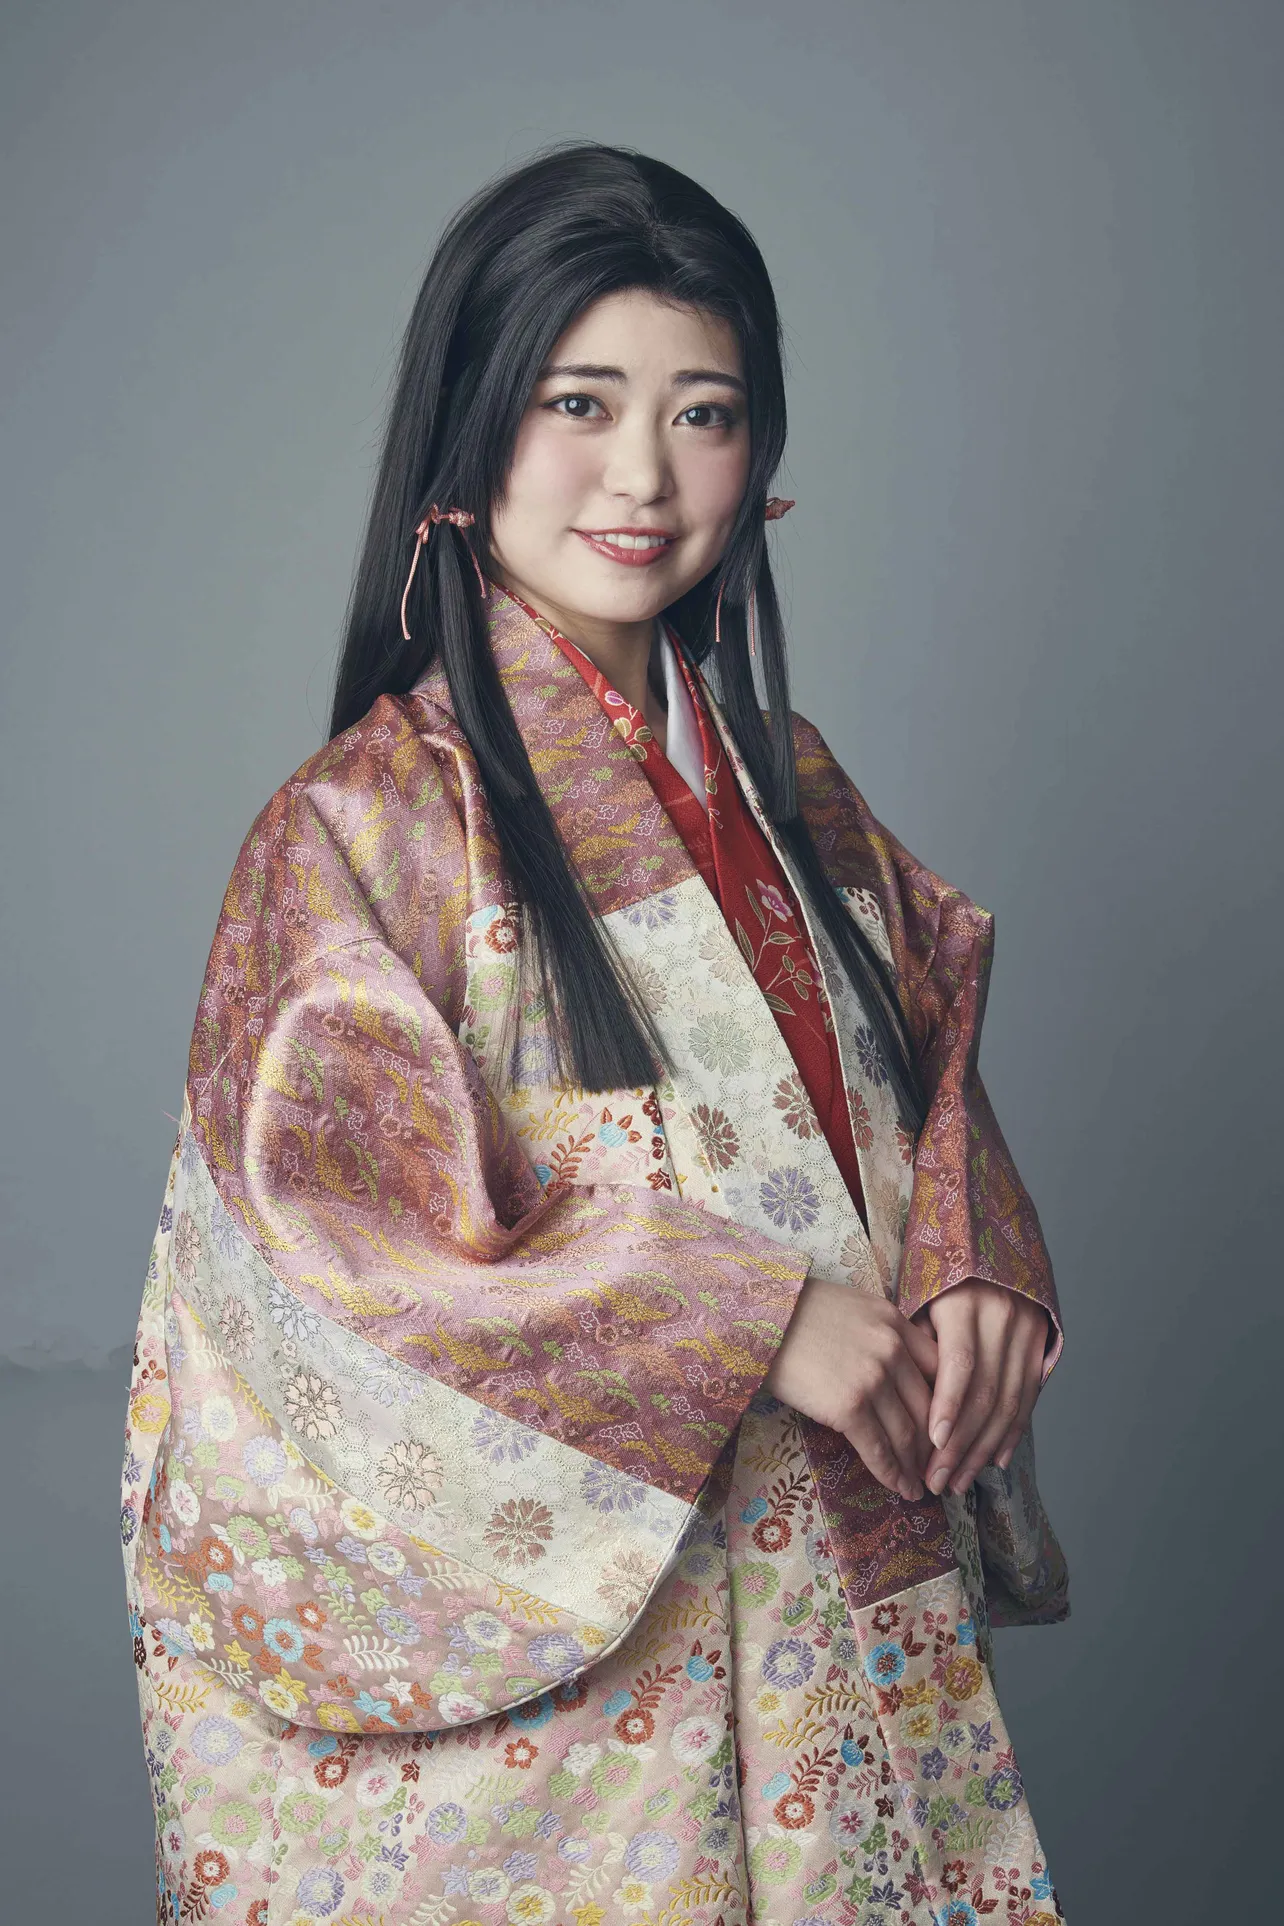 【写真を見る】元AKB48の前田亜美はお市の娘・茶々役で出演。愛らしい着物姿を見せてくれる